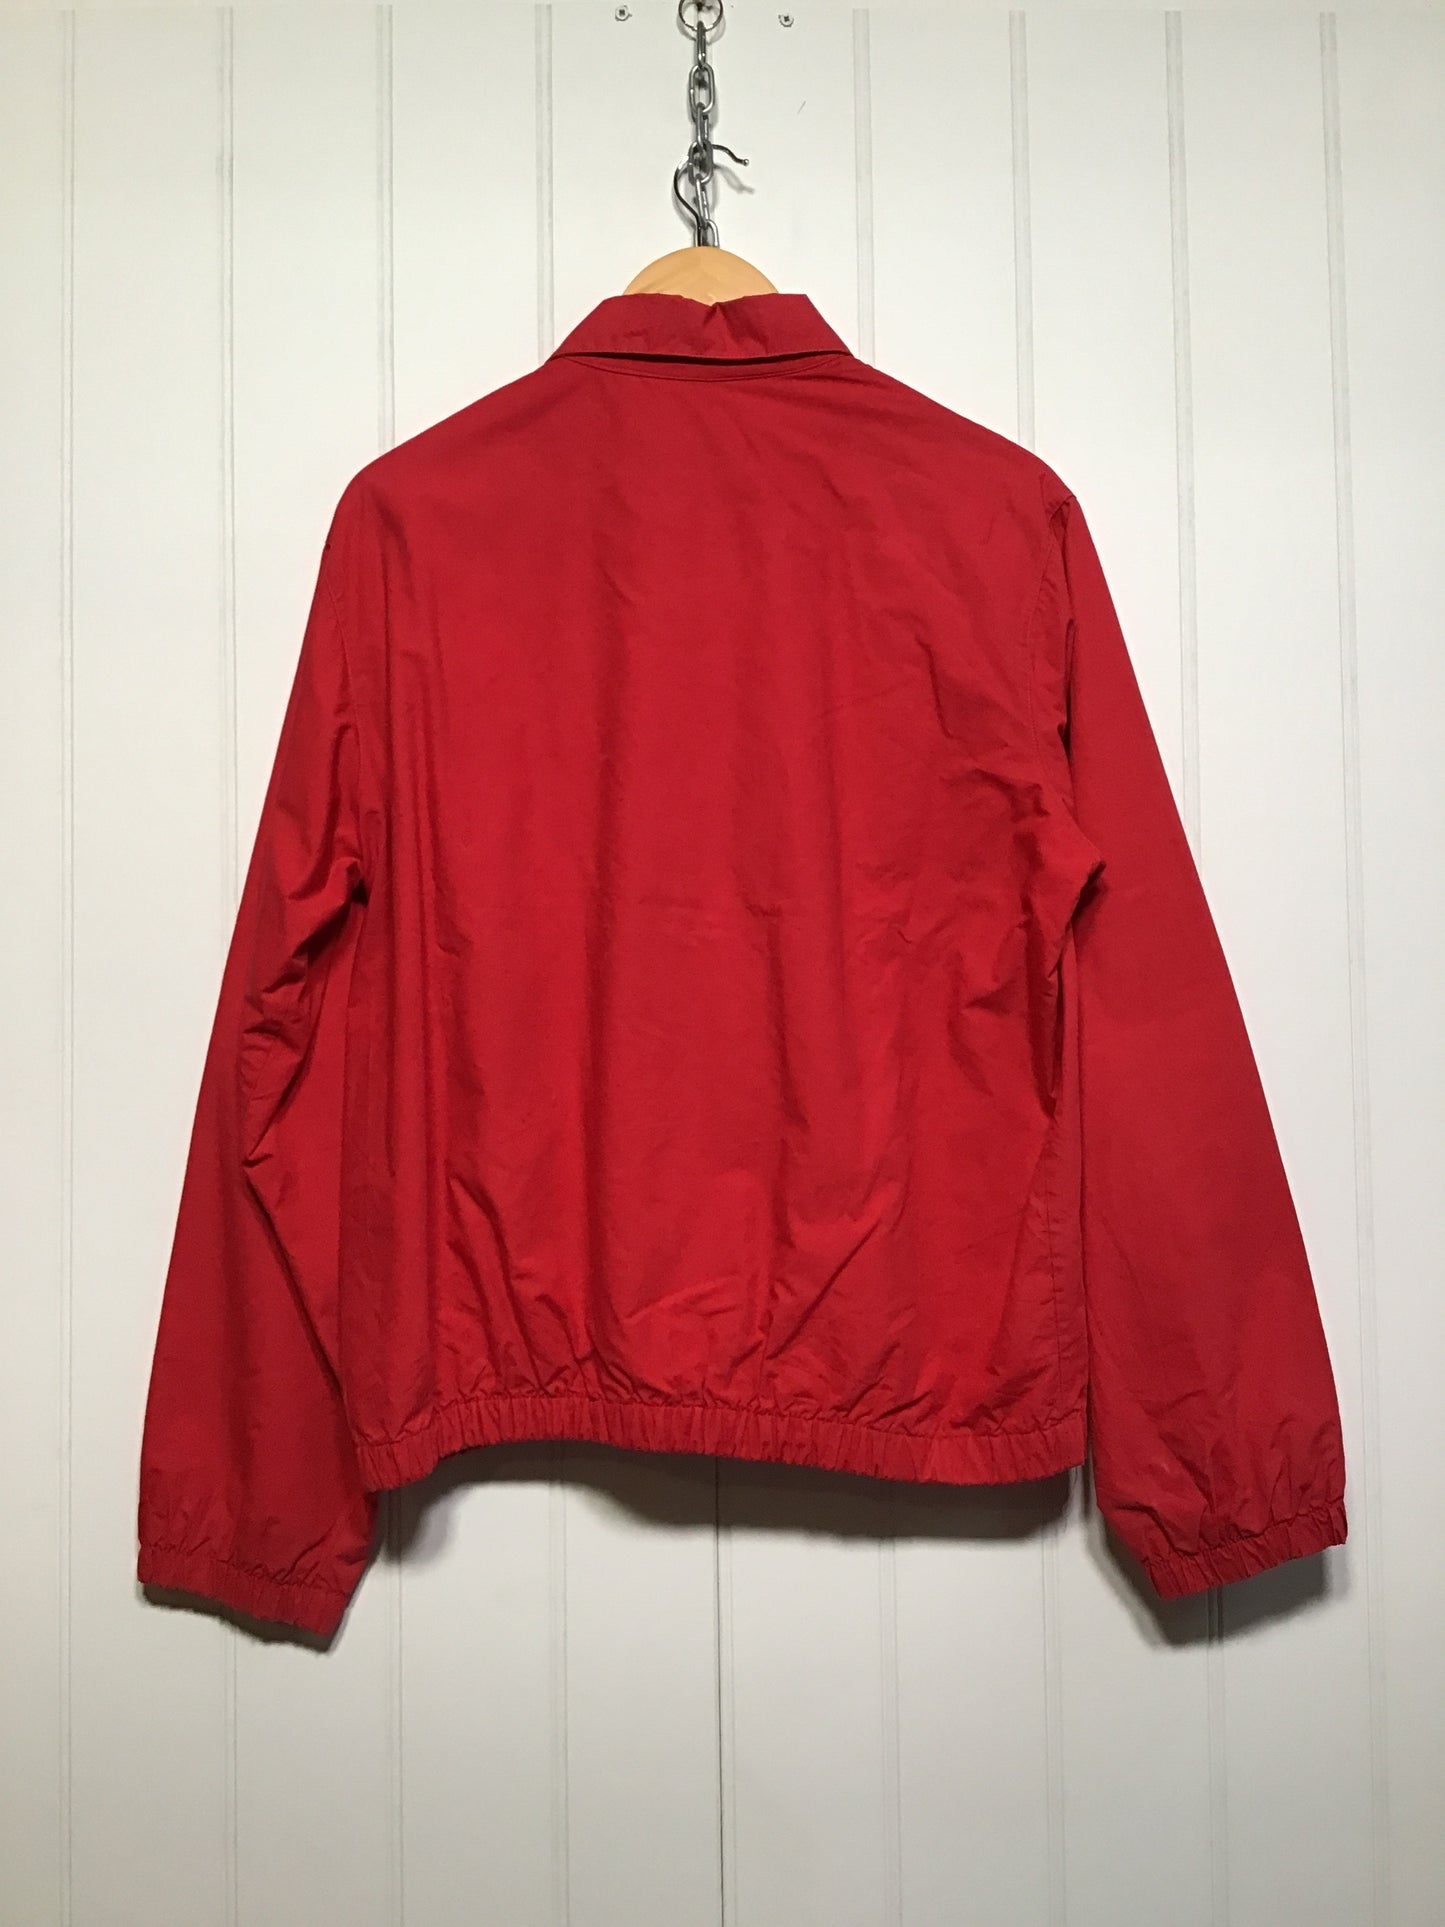 Red Harrington Jacket (Size M)